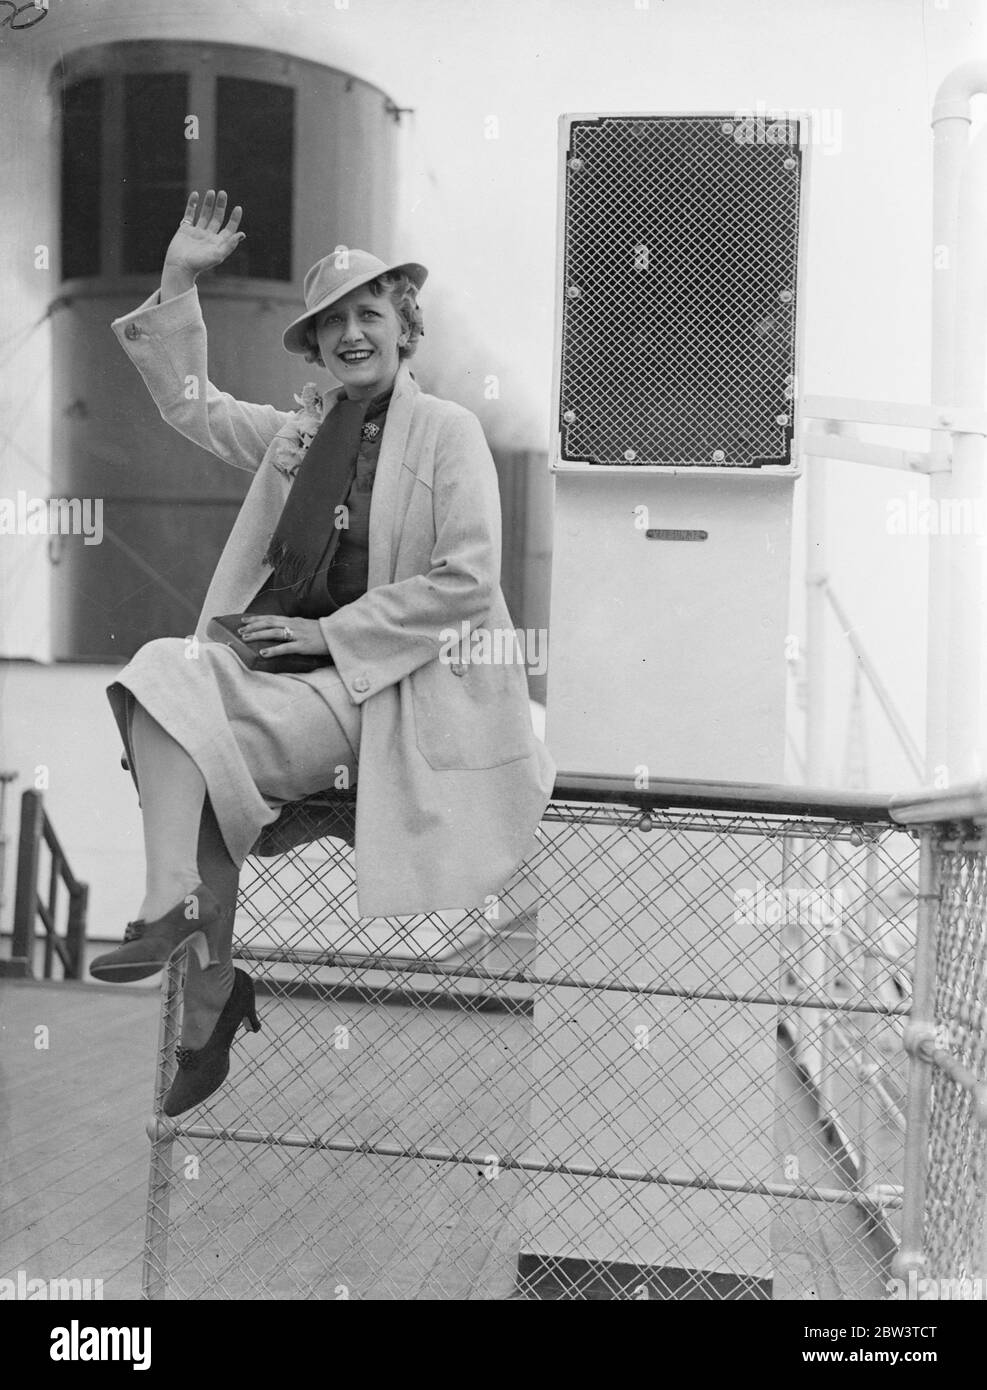 Cora Goffin, die bekannte britische Comedy-Schauspielerin, winkt der Kamera an Bord des Schiffes zu. Stockfoto